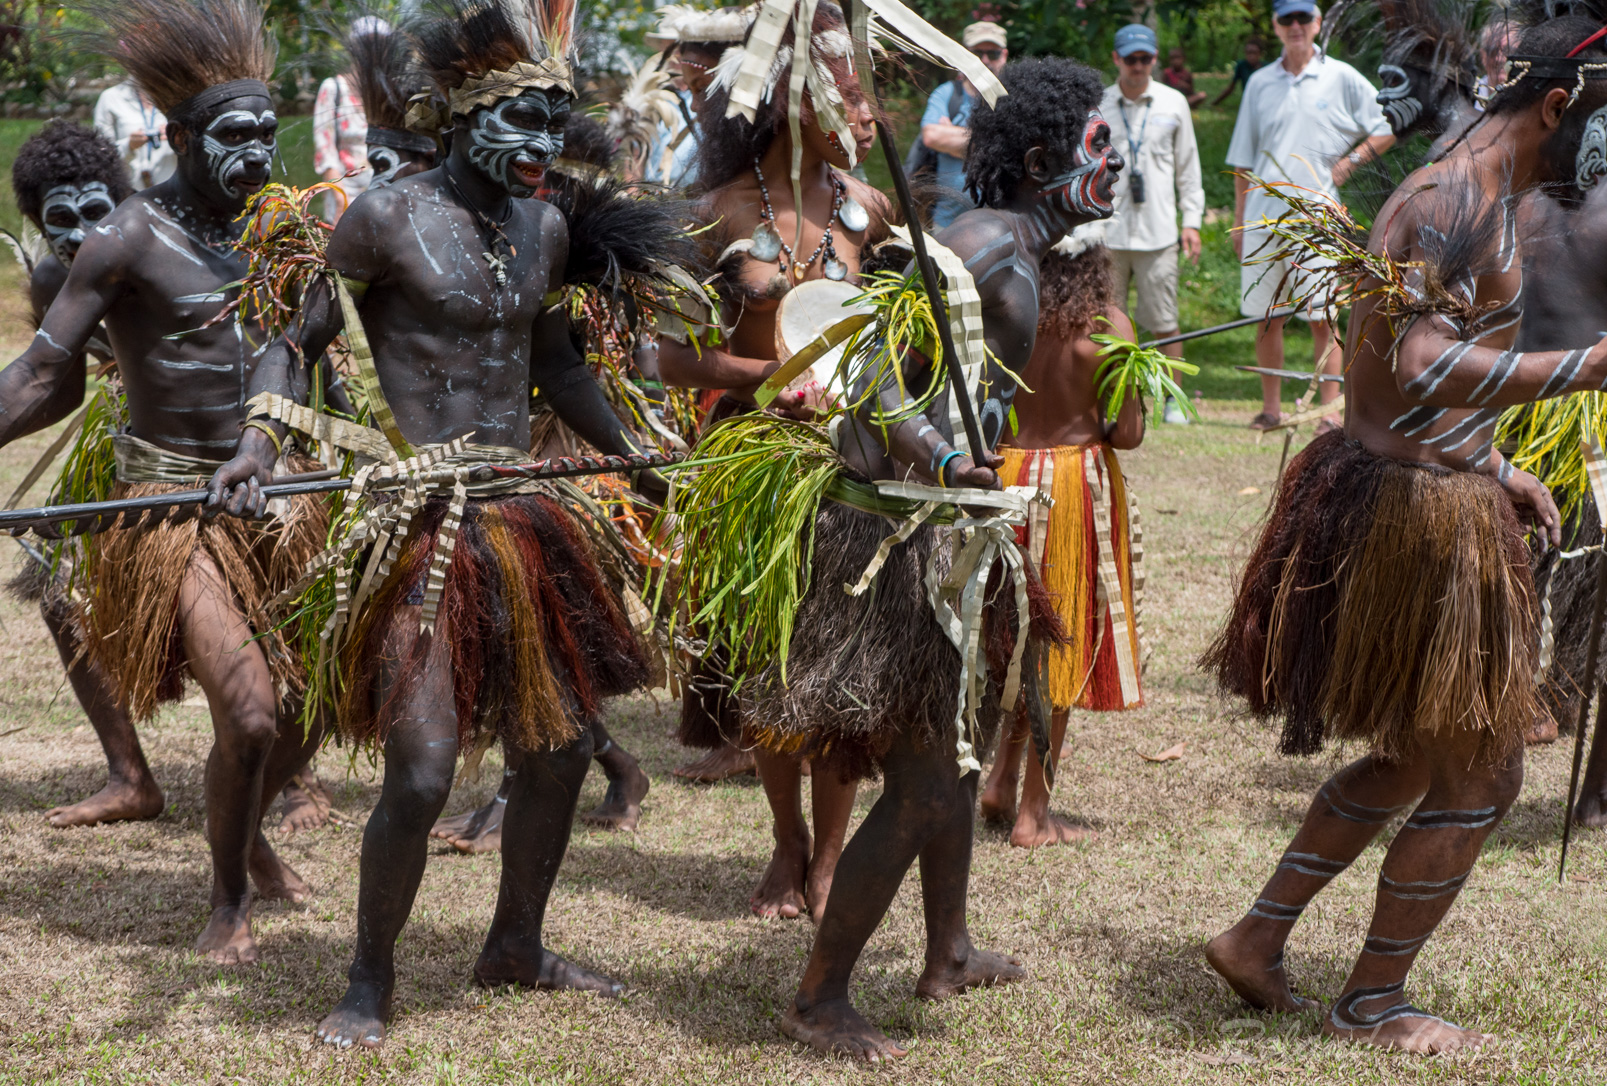 Danses traditionnelles par des habitants de l'ethnie Palipe.